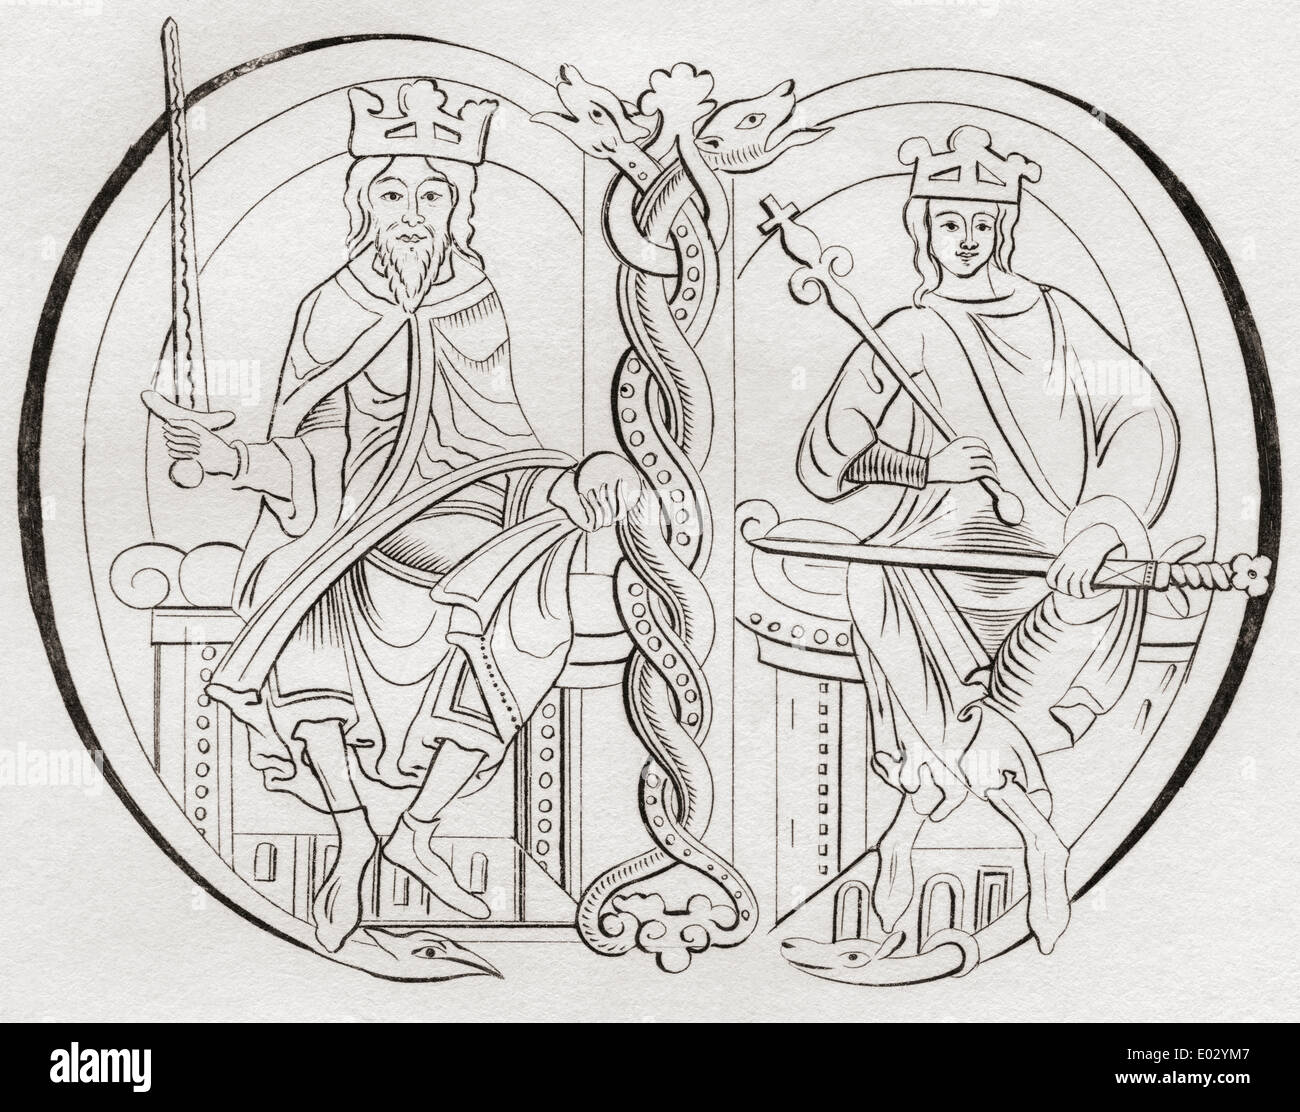 David ho, sinistra, 1084 - 1153. Il principe del Cumbrians. Malcolm IV, a destra. Entrambi i re degli scozzesi. Foto Stock